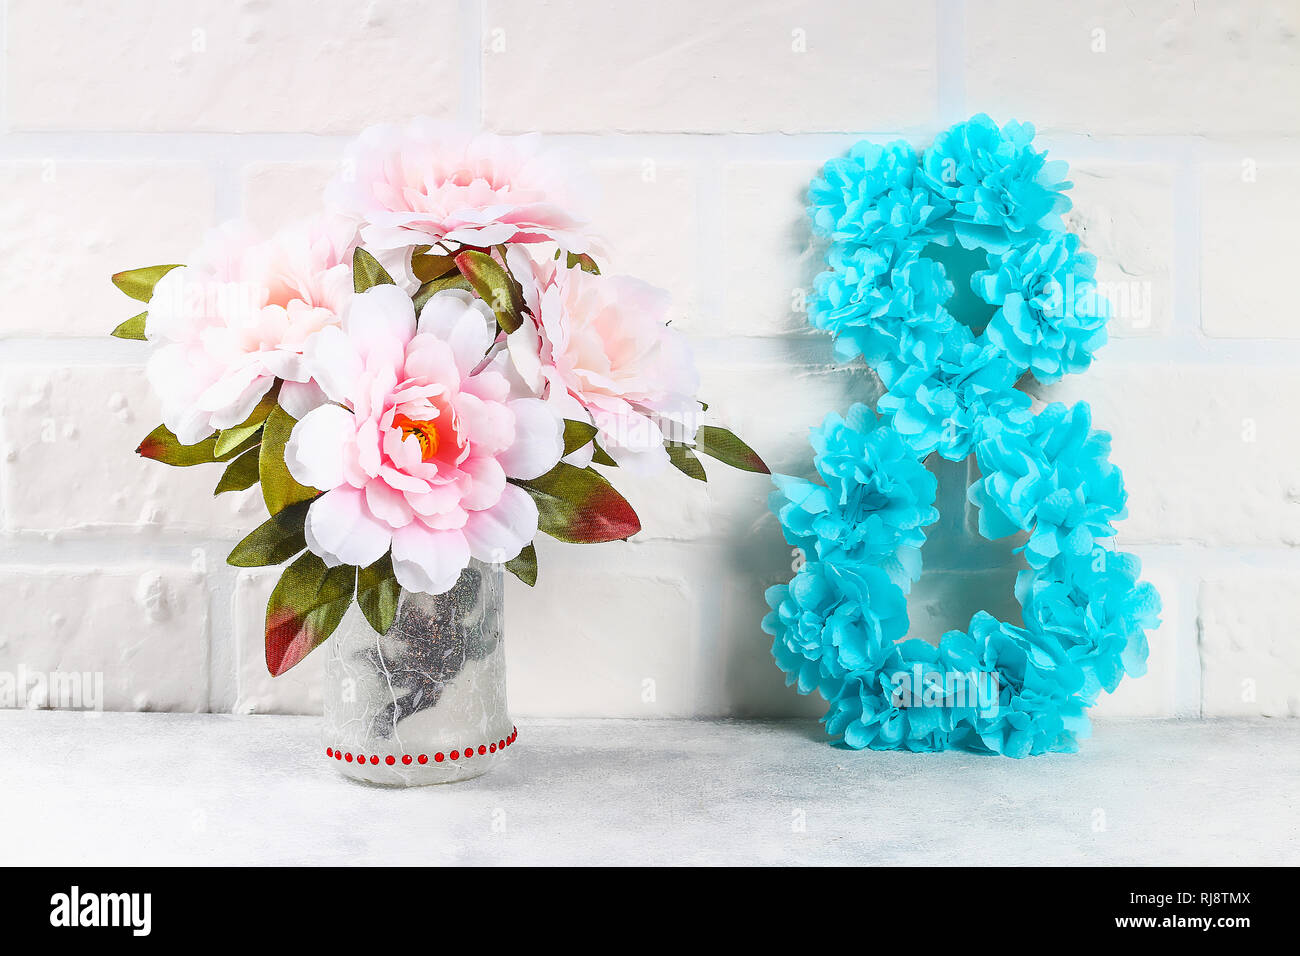 DIY Paper Flower BOUQUET/Birthday Gift Ideas/diy paper bouquet